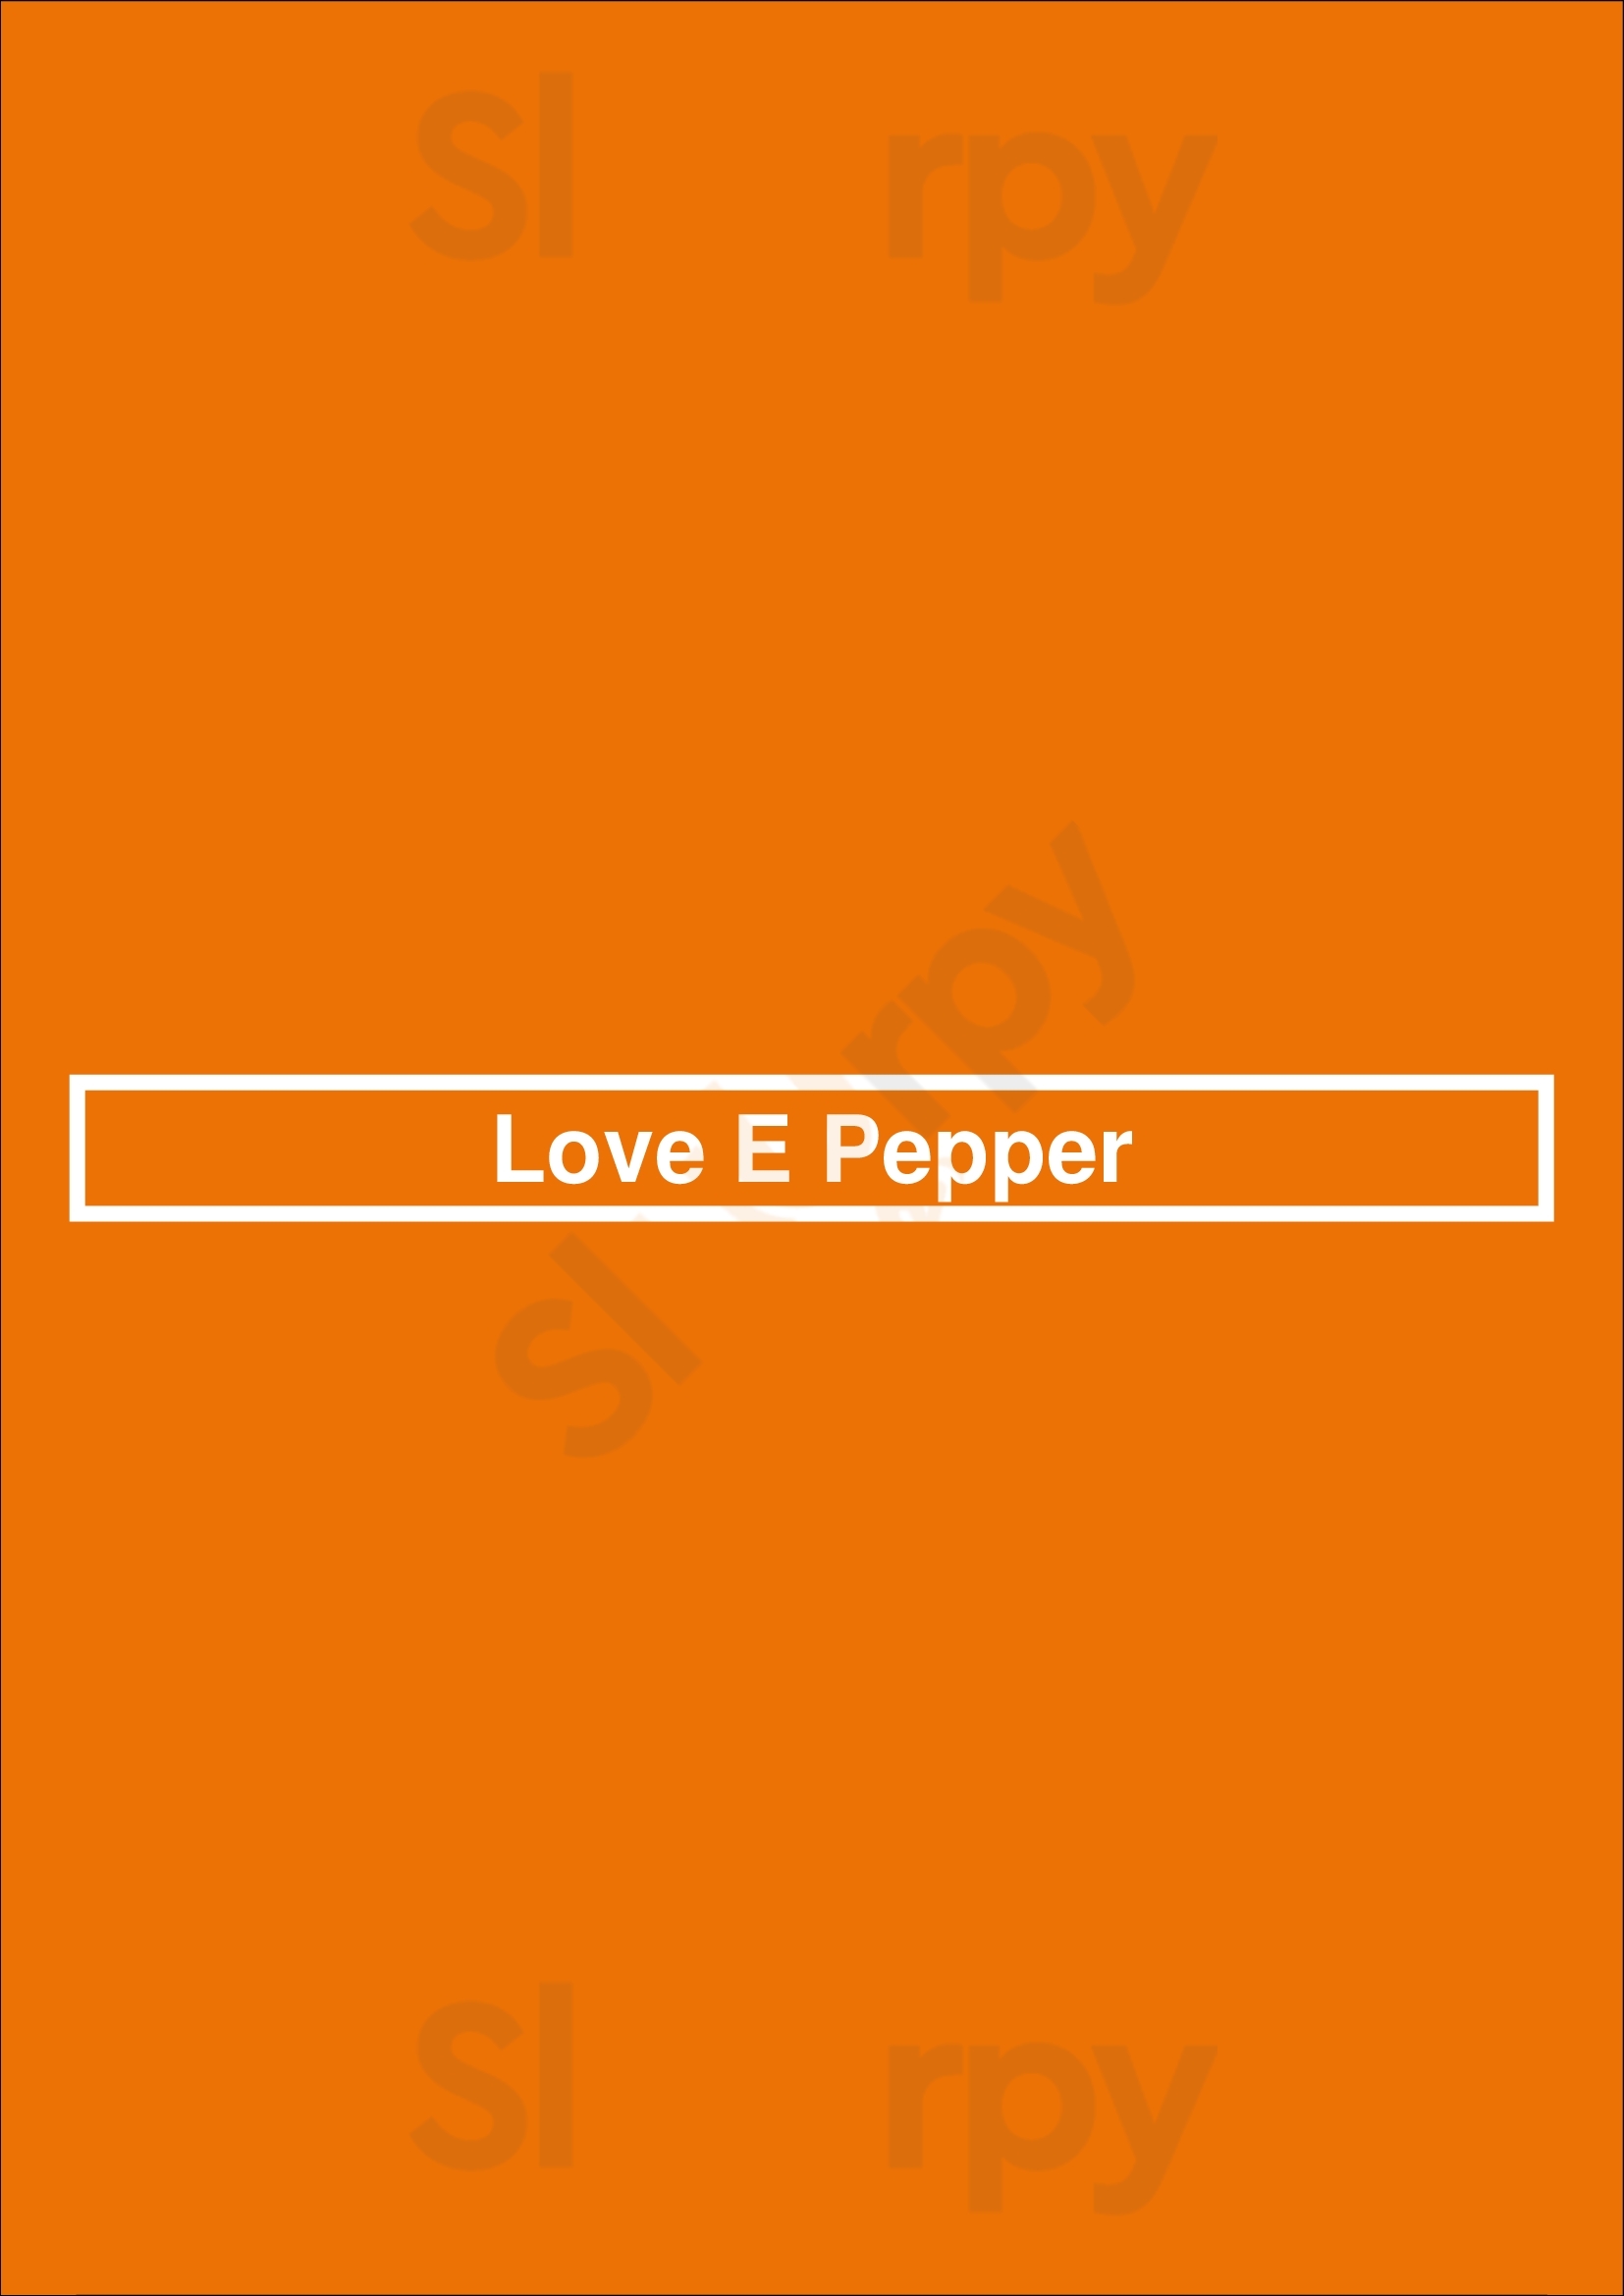 Love&pepper Porto Menu - 1